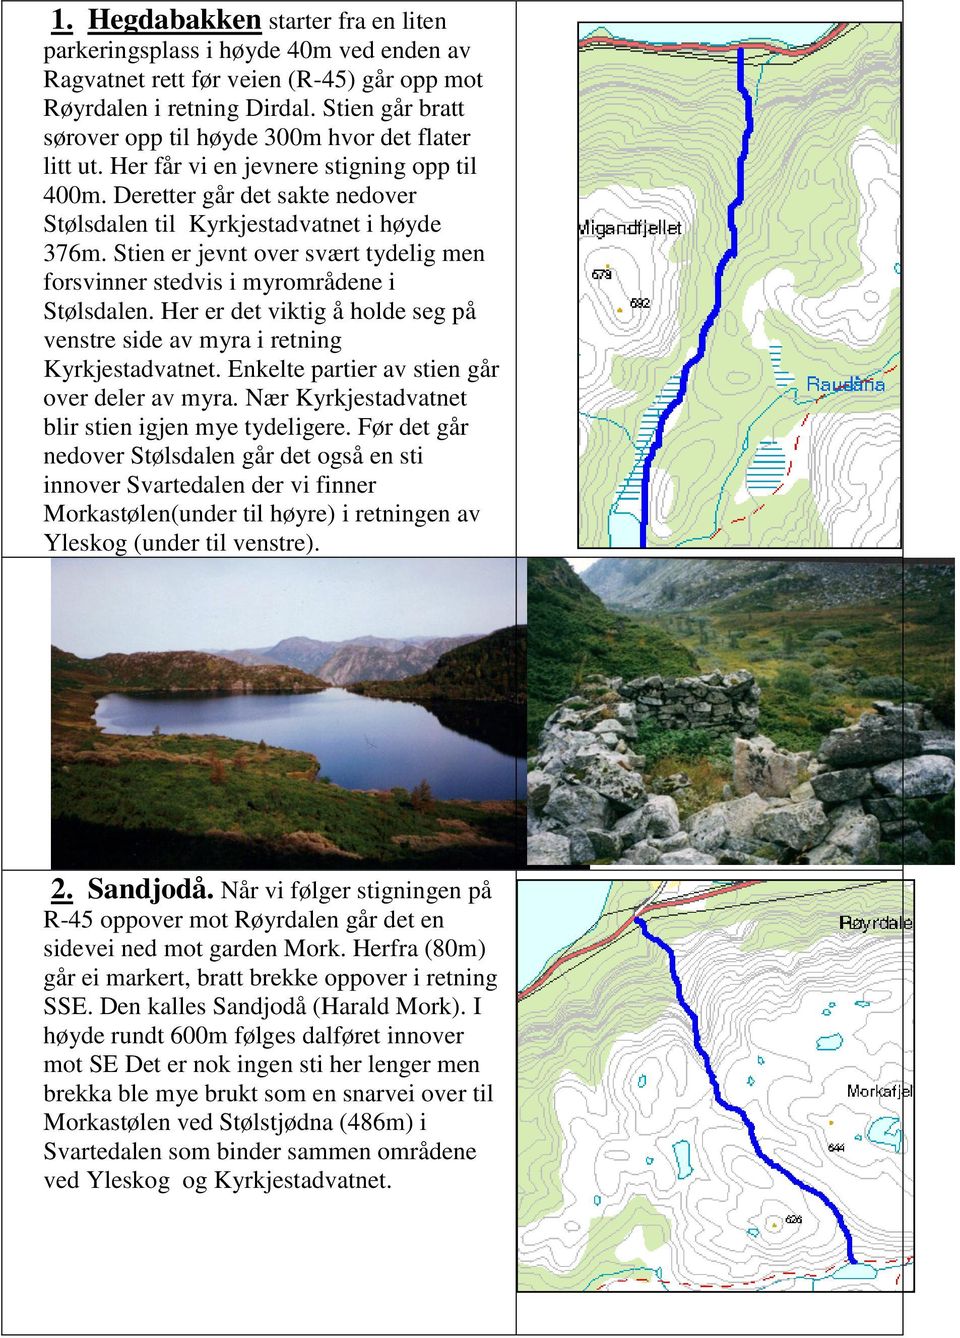 Stien er jevnt over svært tydelig men forsvinner stedvis i myrområdene i Stølsdalen. Her er det viktig å holde seg på venstre side av myra i retning Kyrkjestadvatnet.